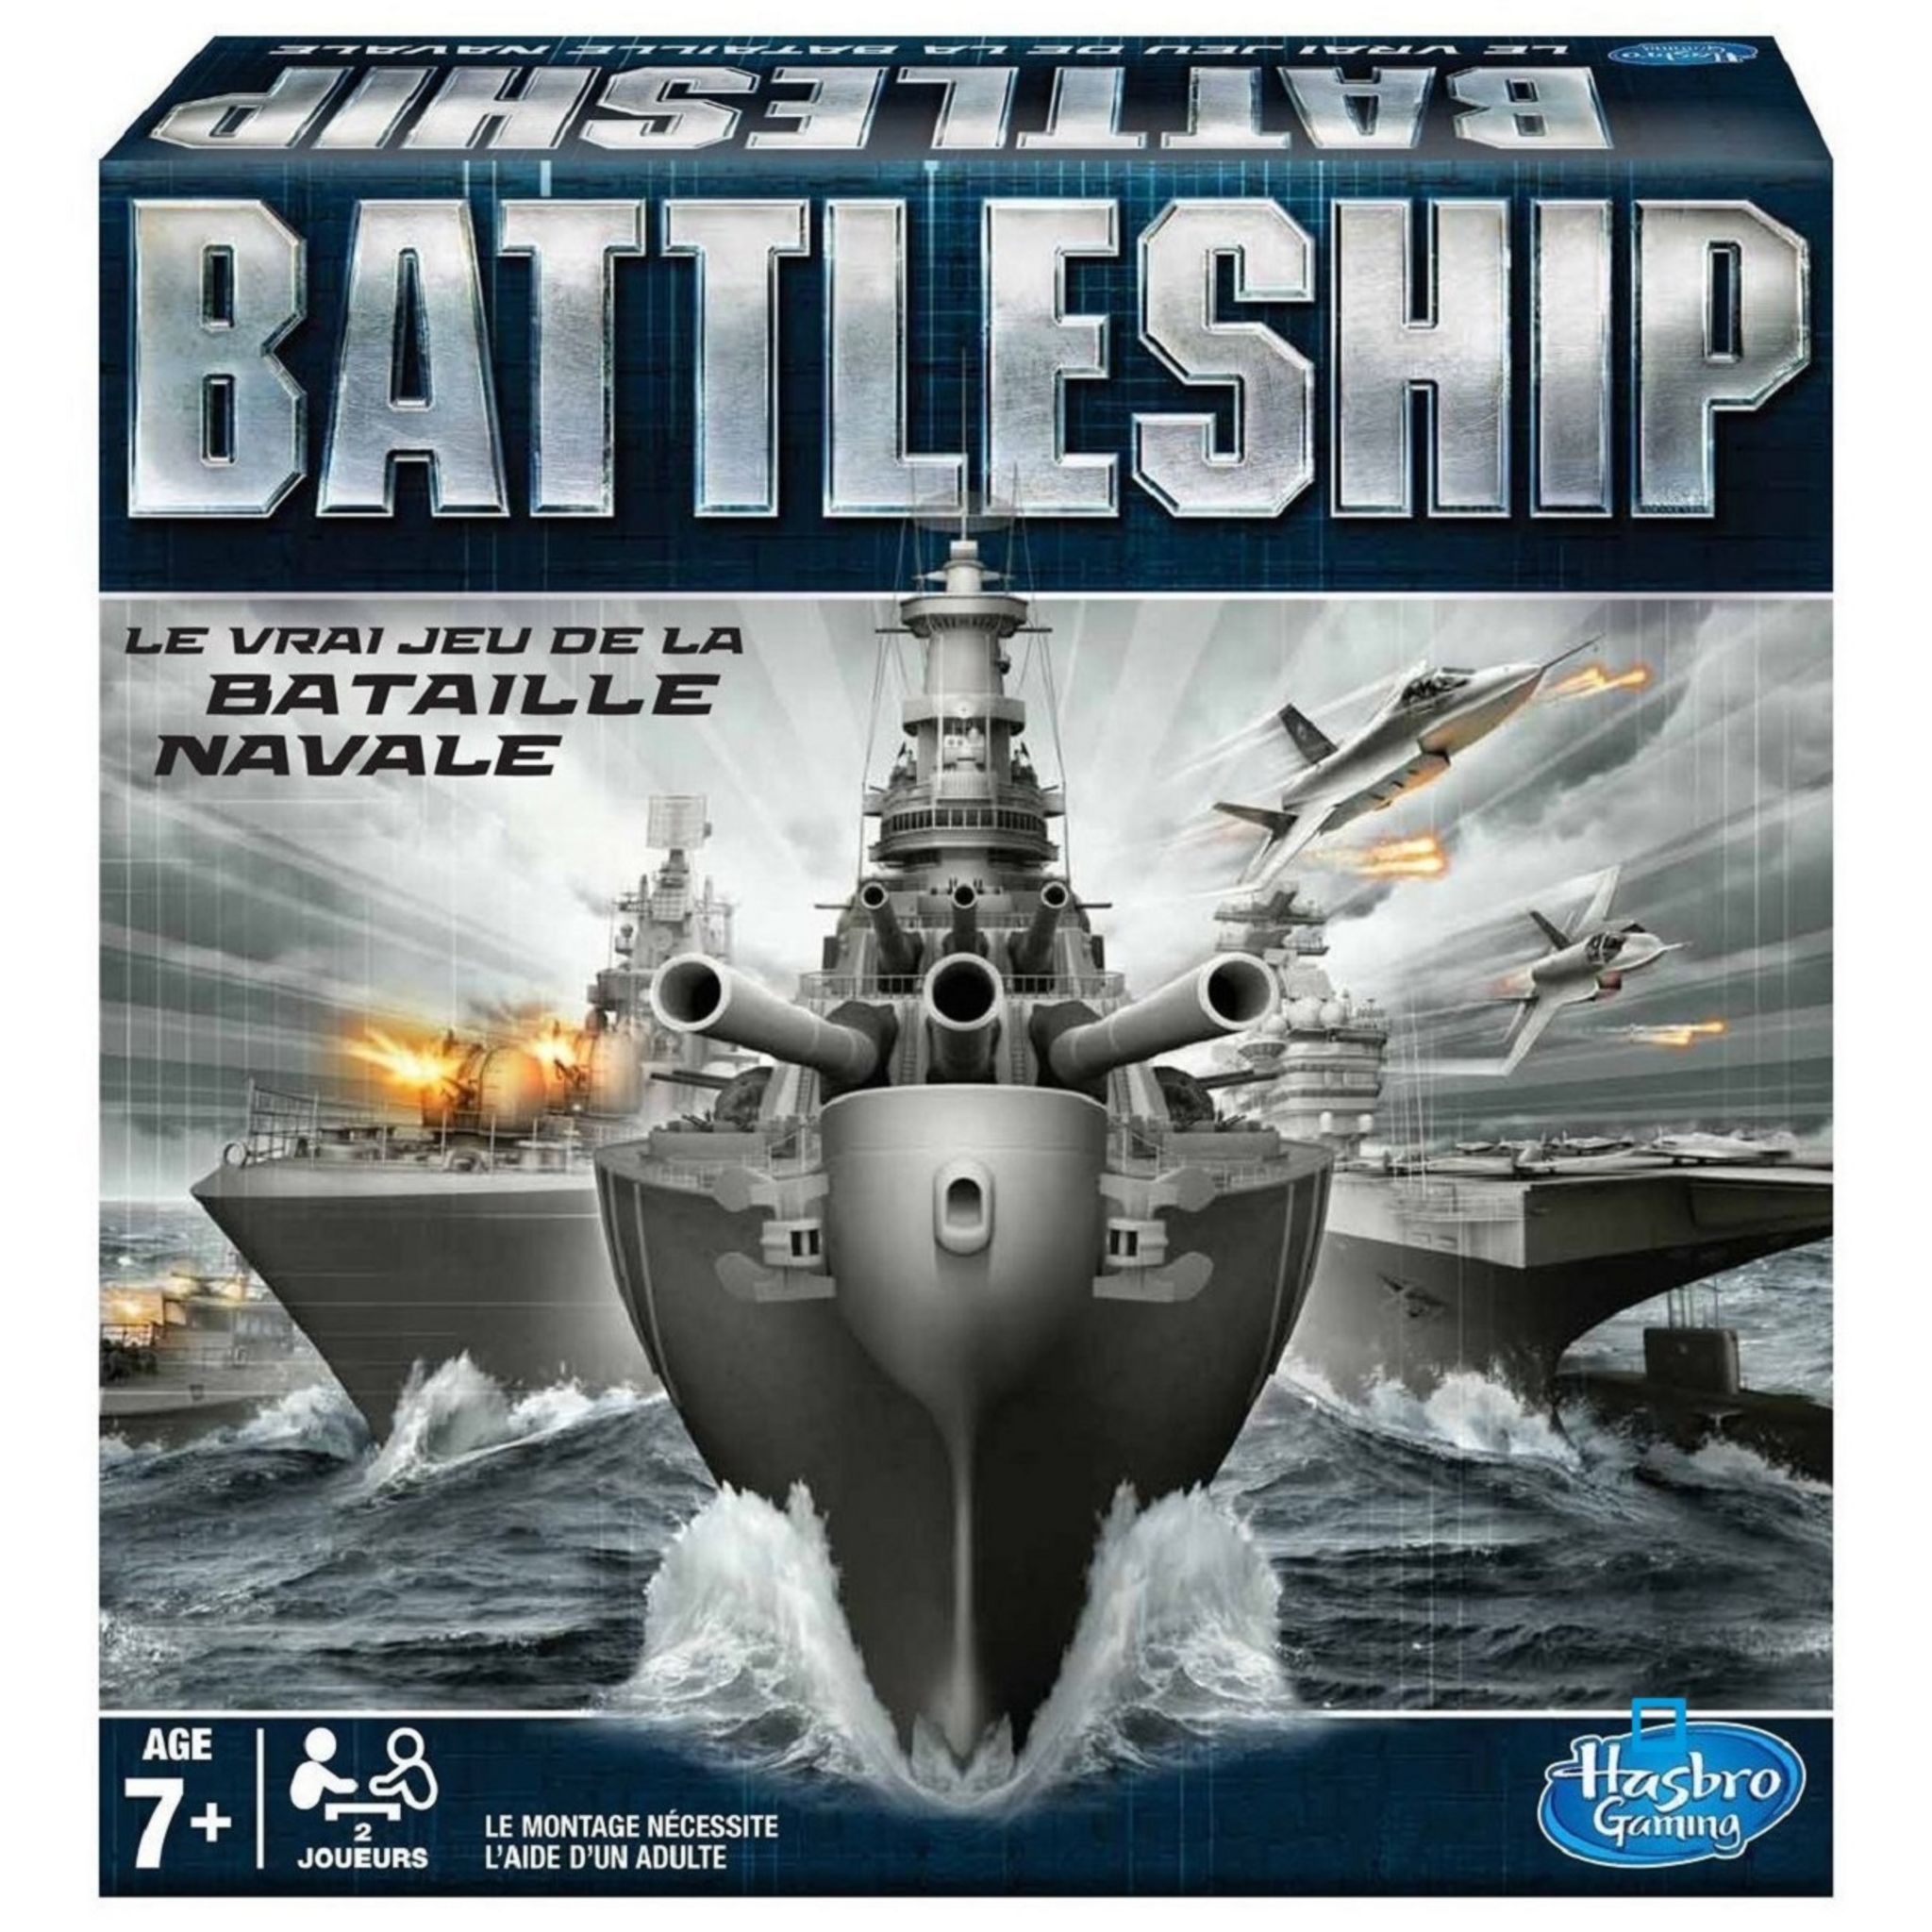 La bataille navale, un jeu simple et toujours amusant